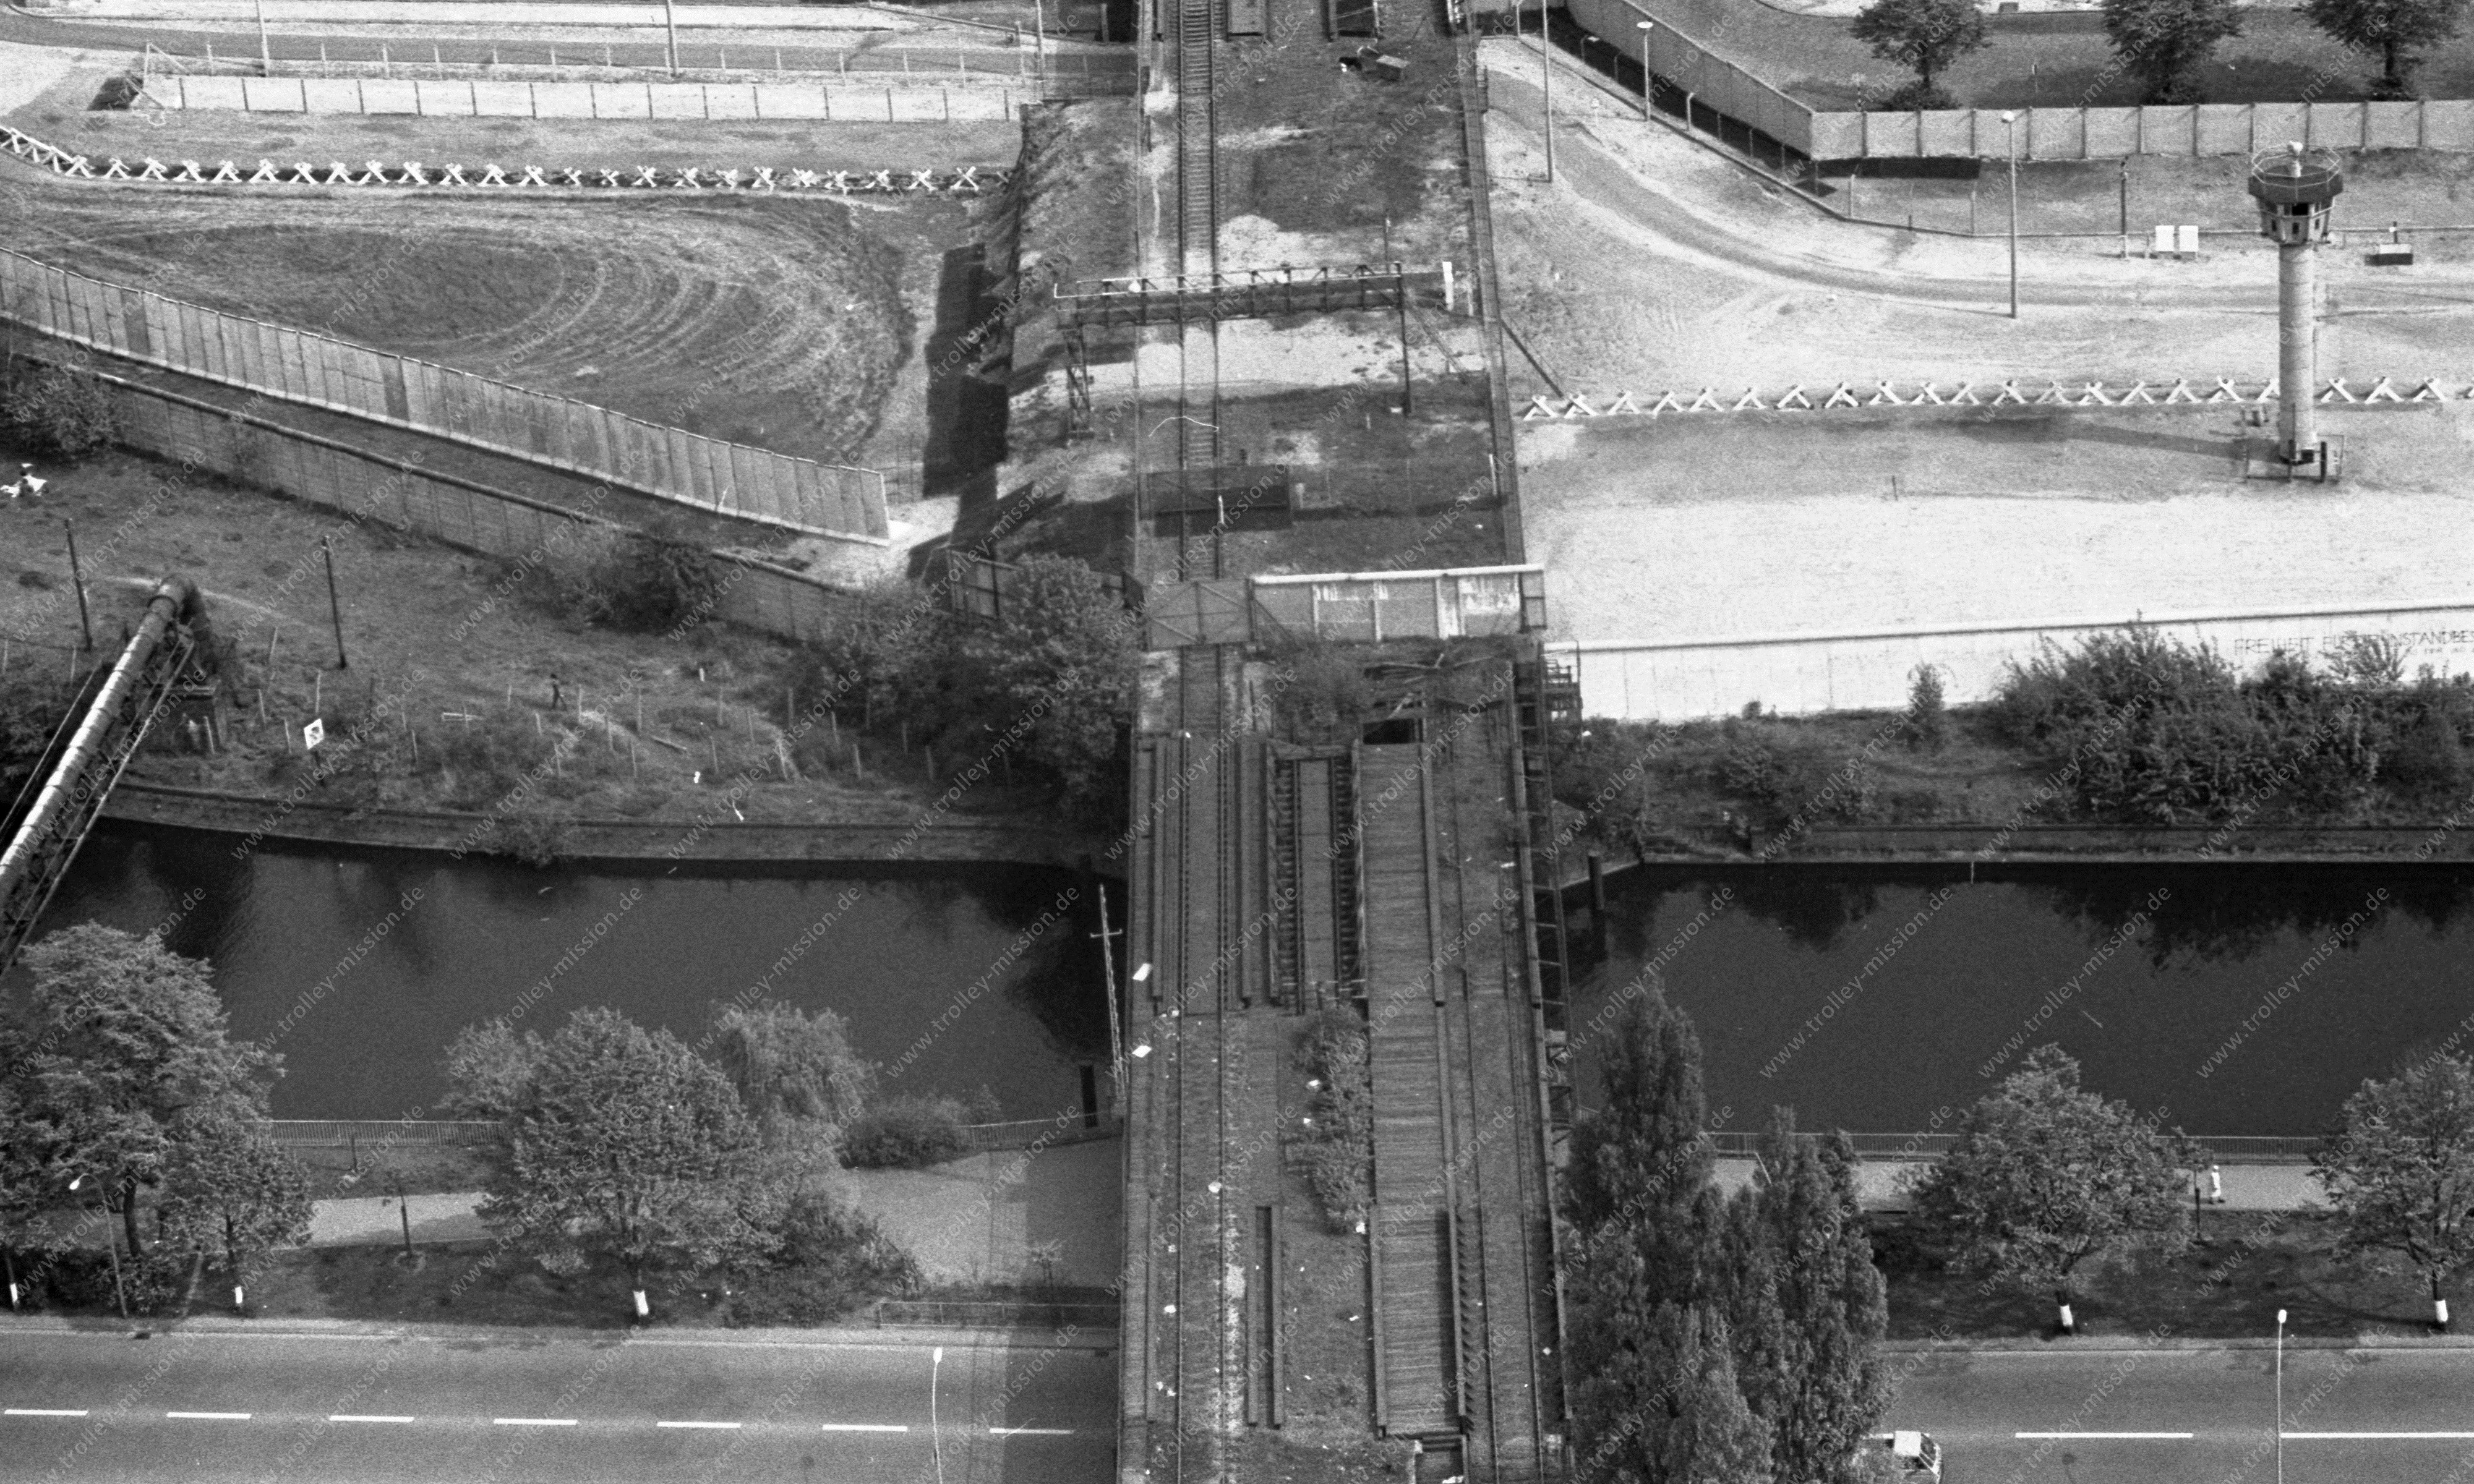 Luftbild der alten Eisenbahnbrücke (Görlitzer Brücke) über den Landwehrkanal zwischen dem Görlitzer Ufer in Berlin-Kreuzberg und dem Wiesenufer in Berlin-Treptow vom 12. Mai 1982